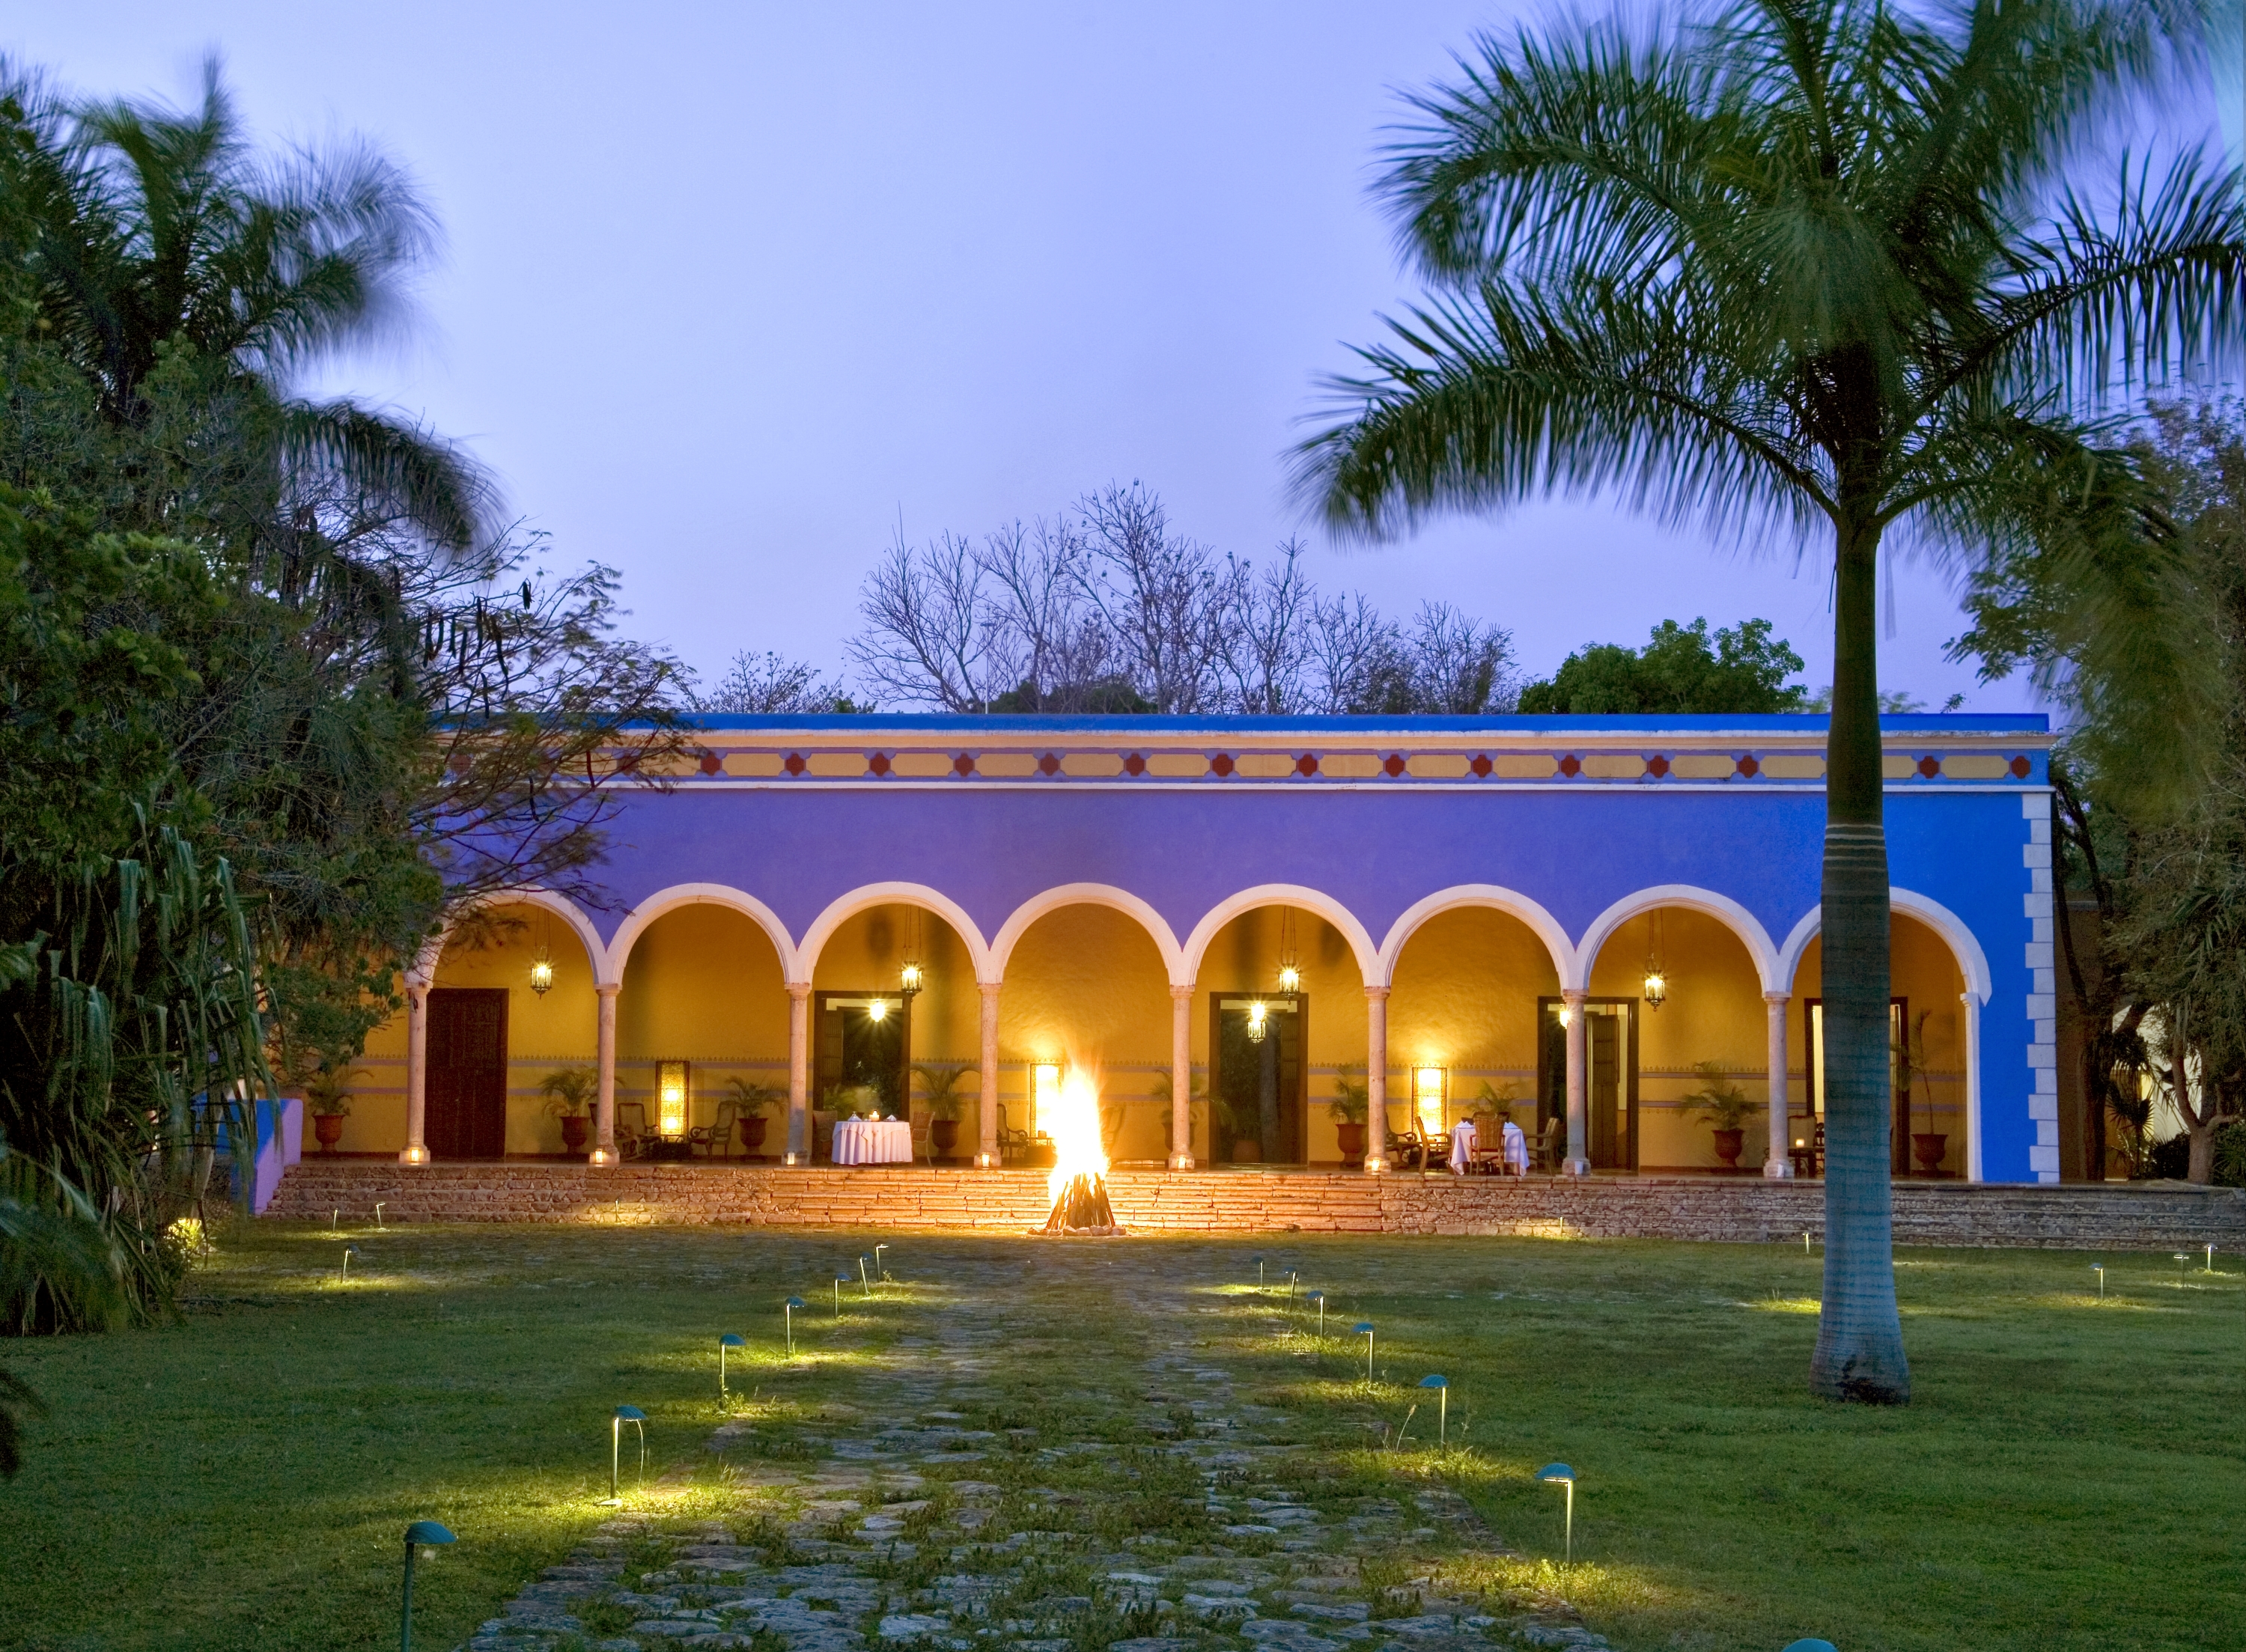 La Casa Principal azul celeste de la Hacienda Santa Rosa, una de las antiguas fincas donde se cultiv el henequn en el interior de Yucatn.